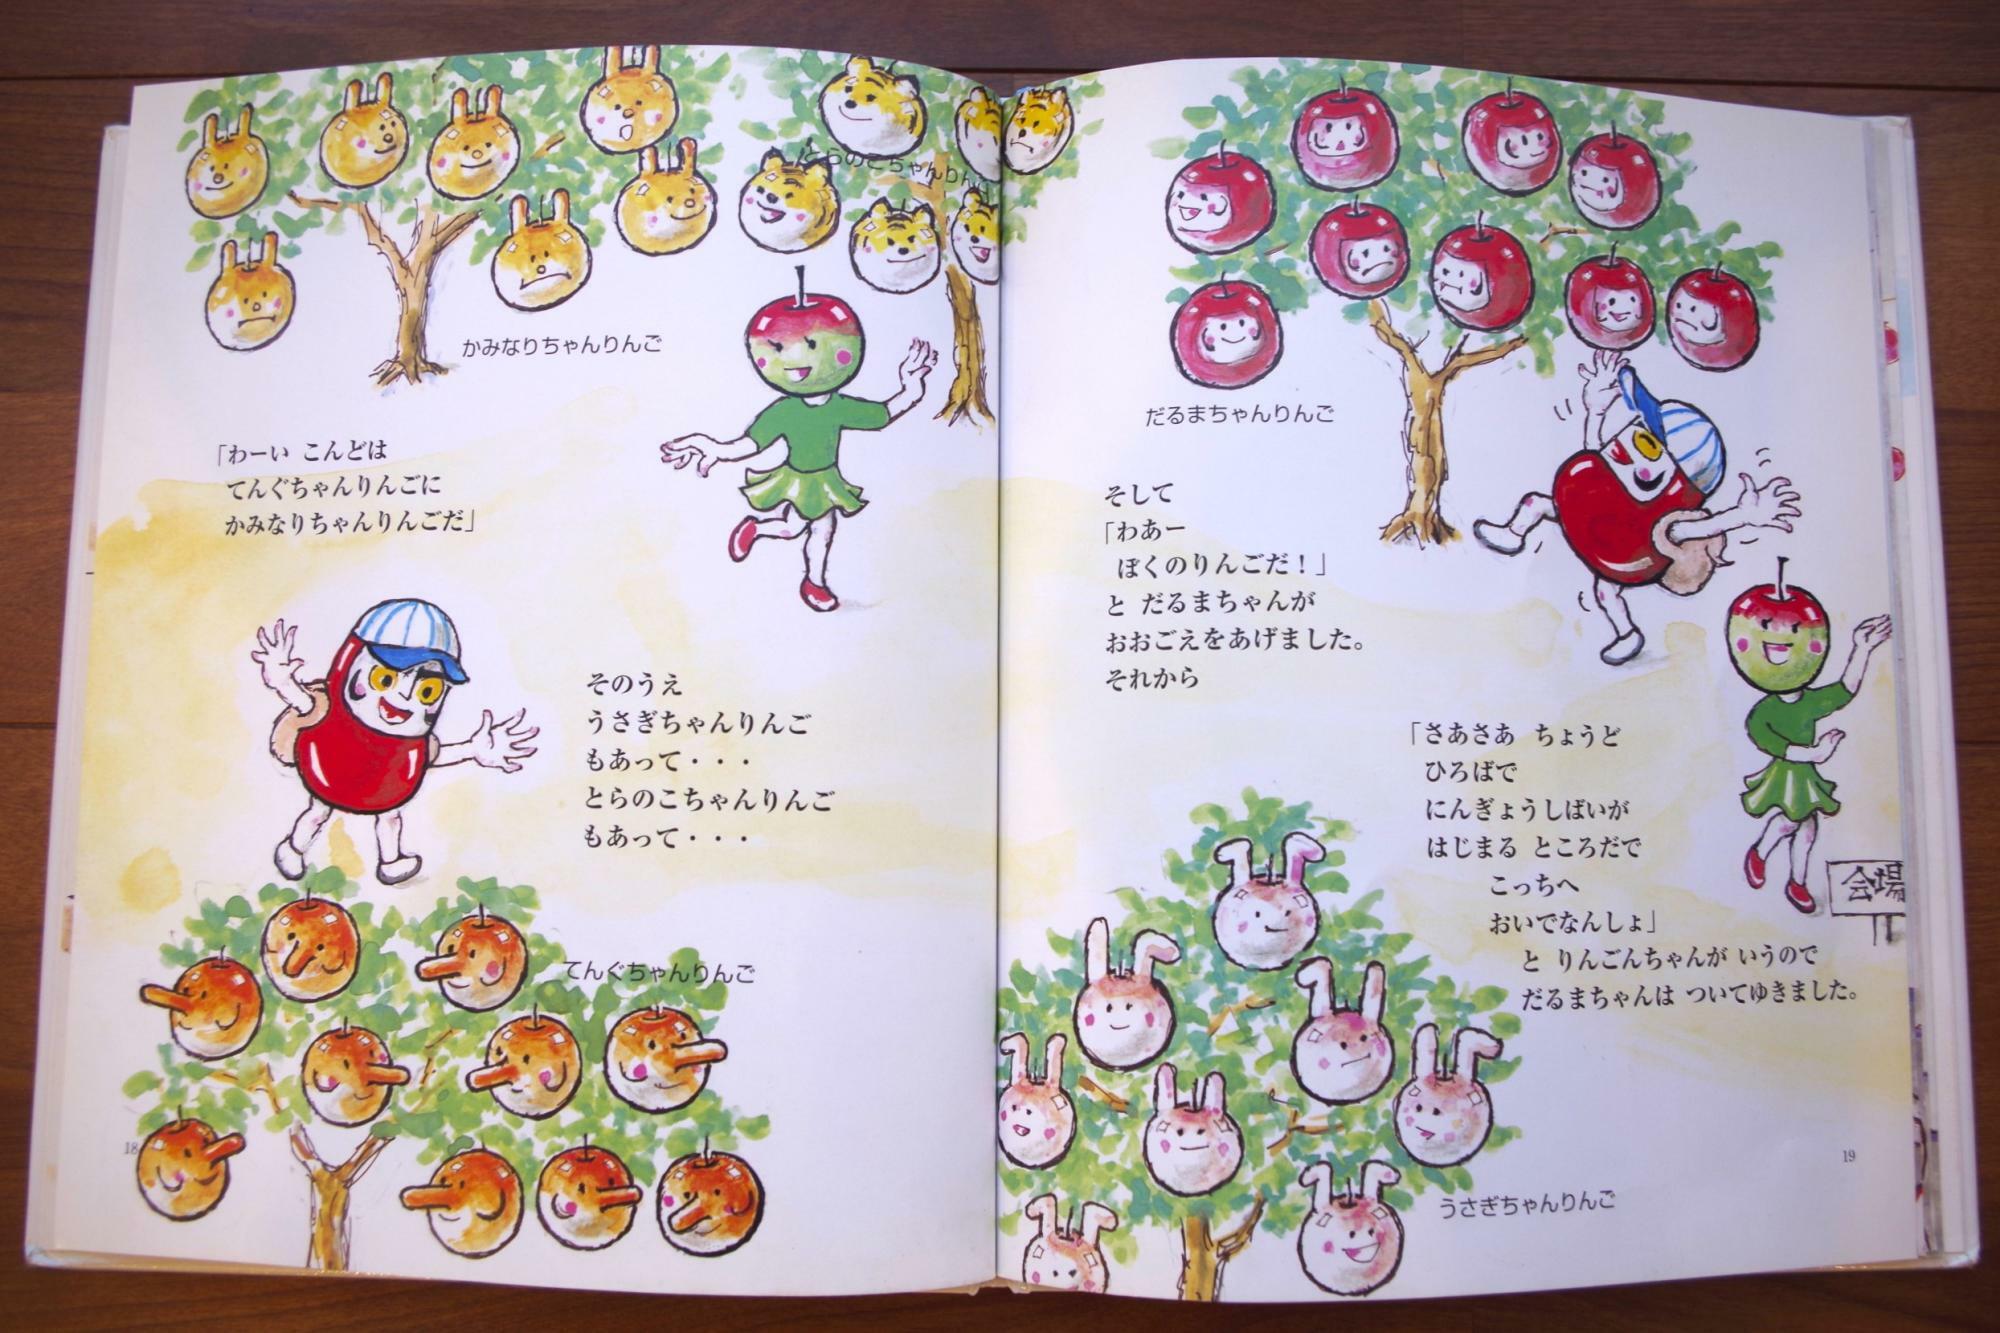 絵本「だるまちゃん・りんごんちゃん」（出版社名・瑞雲舎、著書名・かこさとし）の一場面